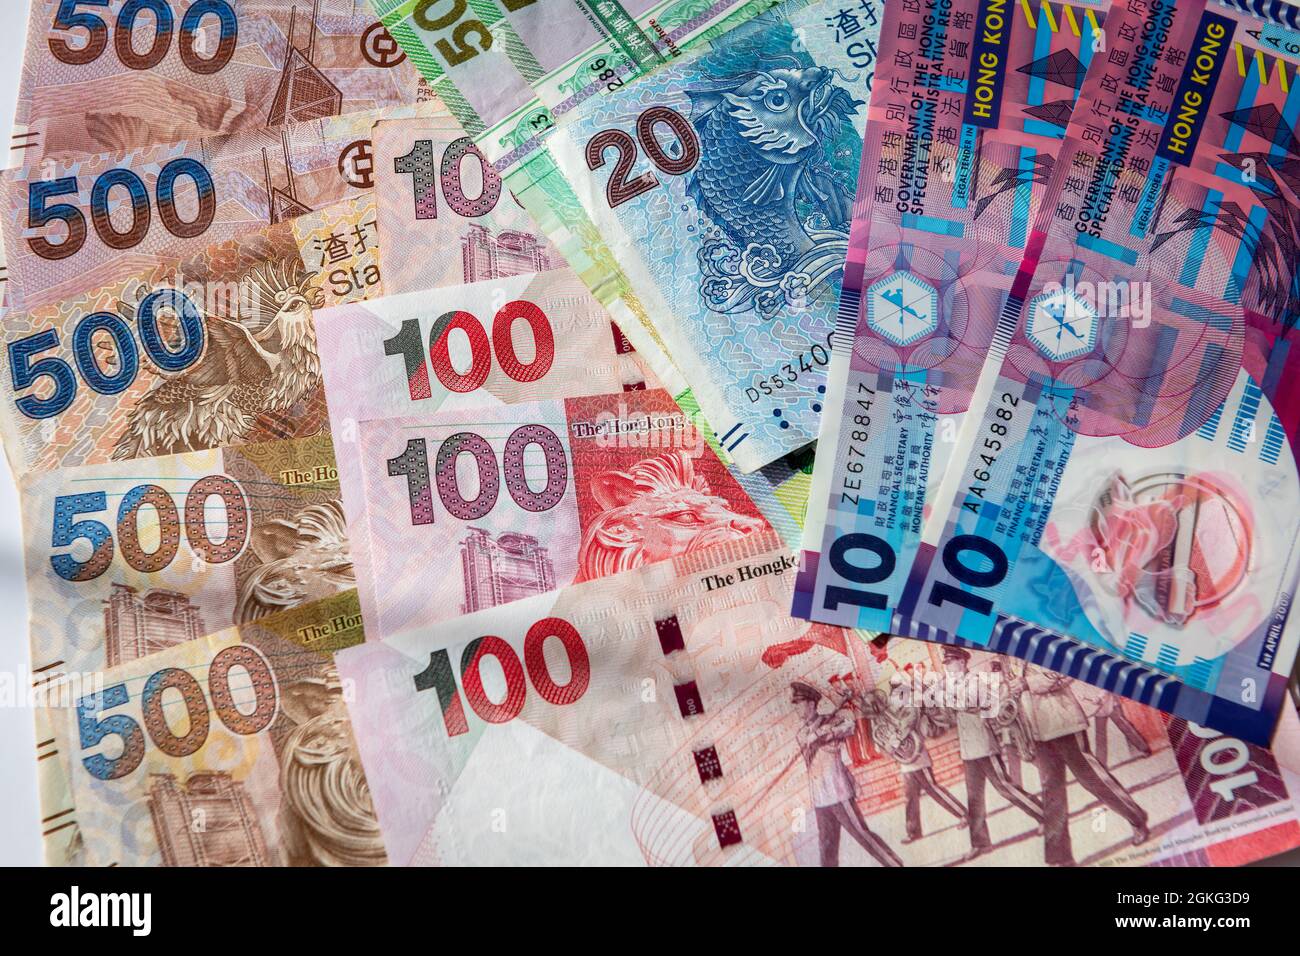 A pile of Hong Kong Dollars bank notes. Stock Photo